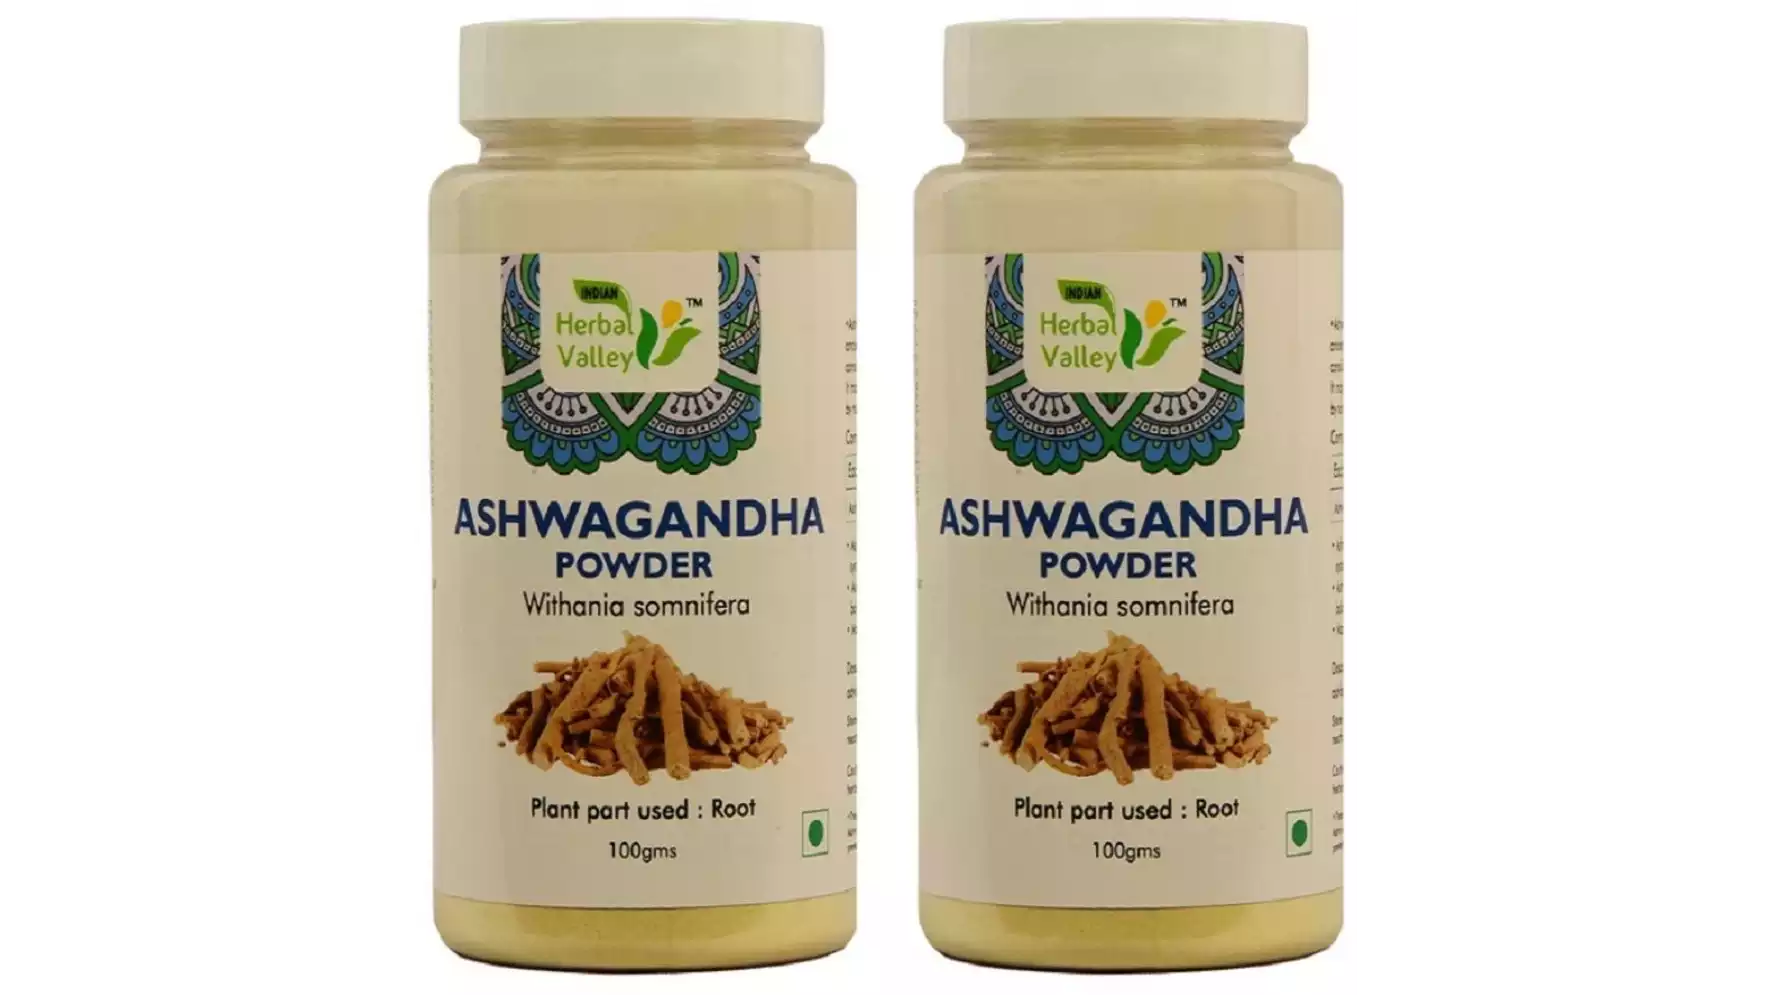 Indian Herbal Valley Ashwagandha Powder (100g, Pack of 2)